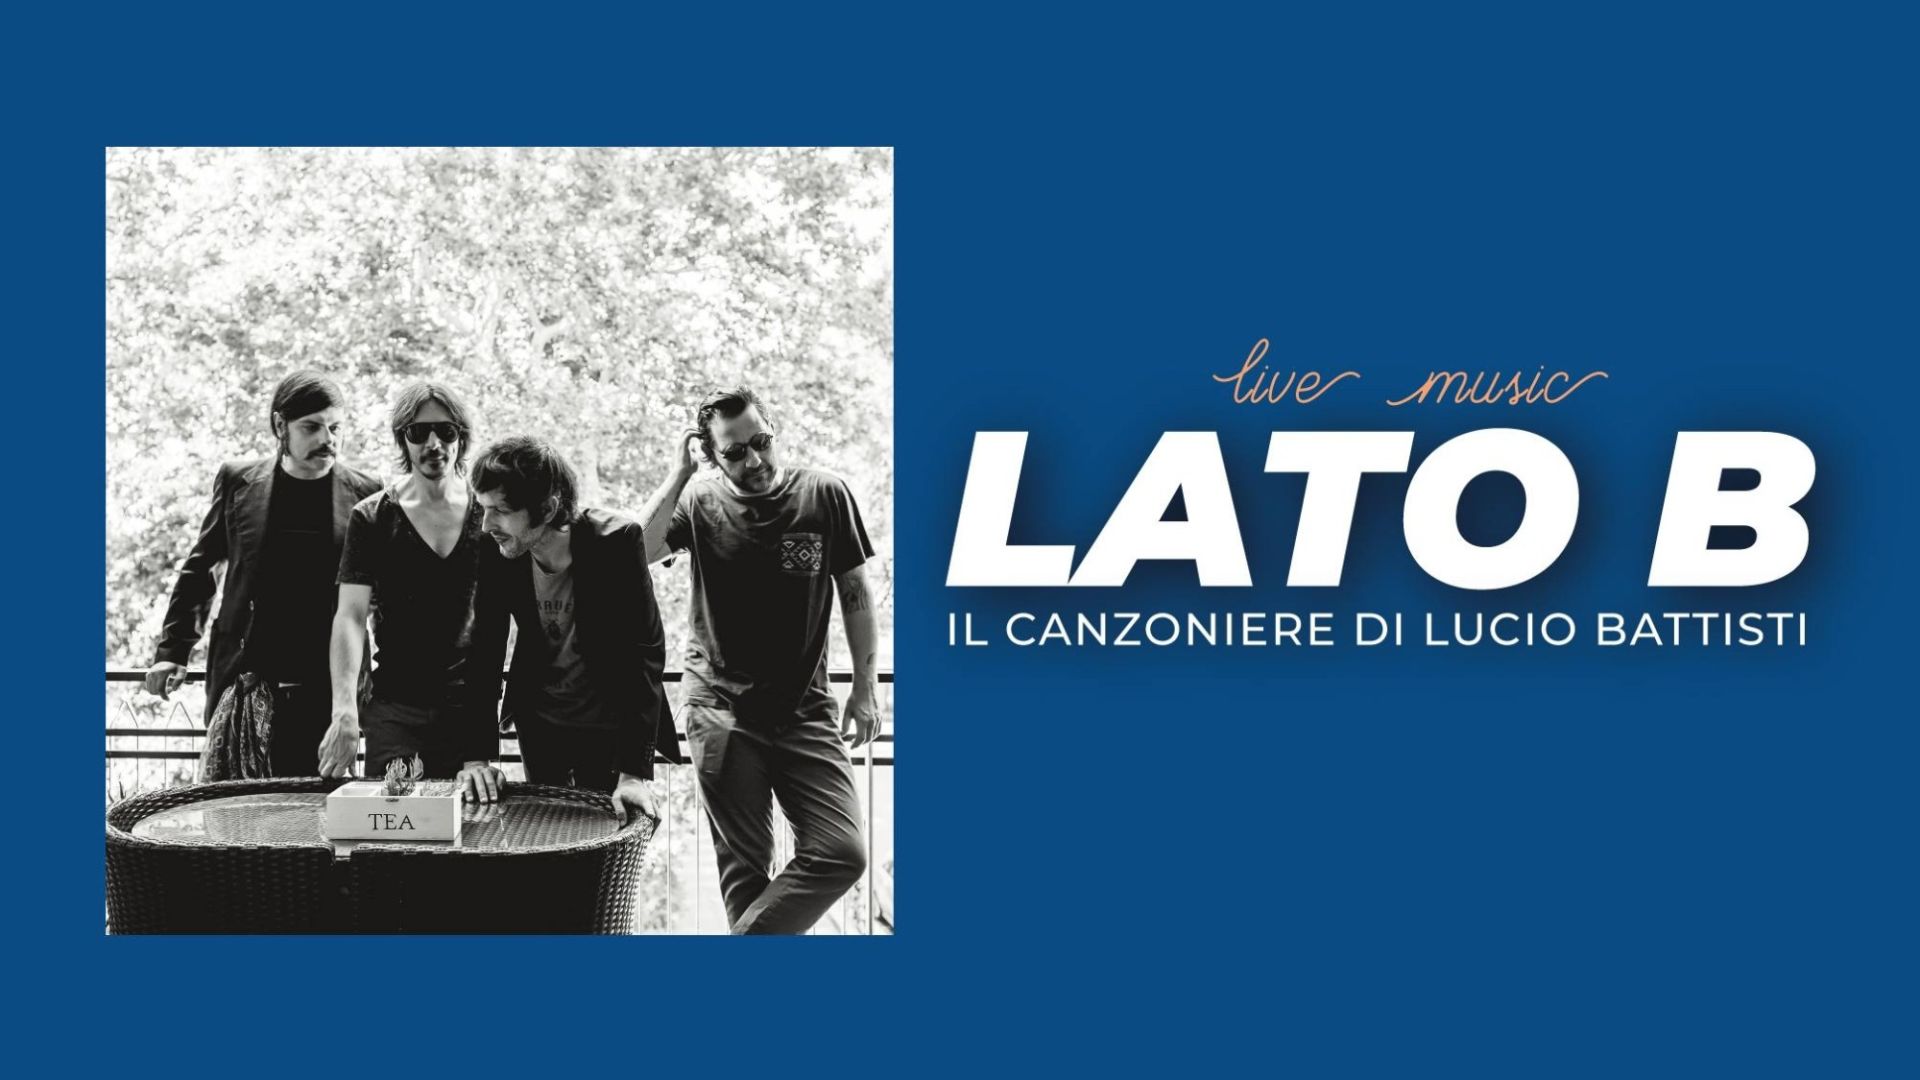 Lato B: il canzoniere di Lucio Battisti